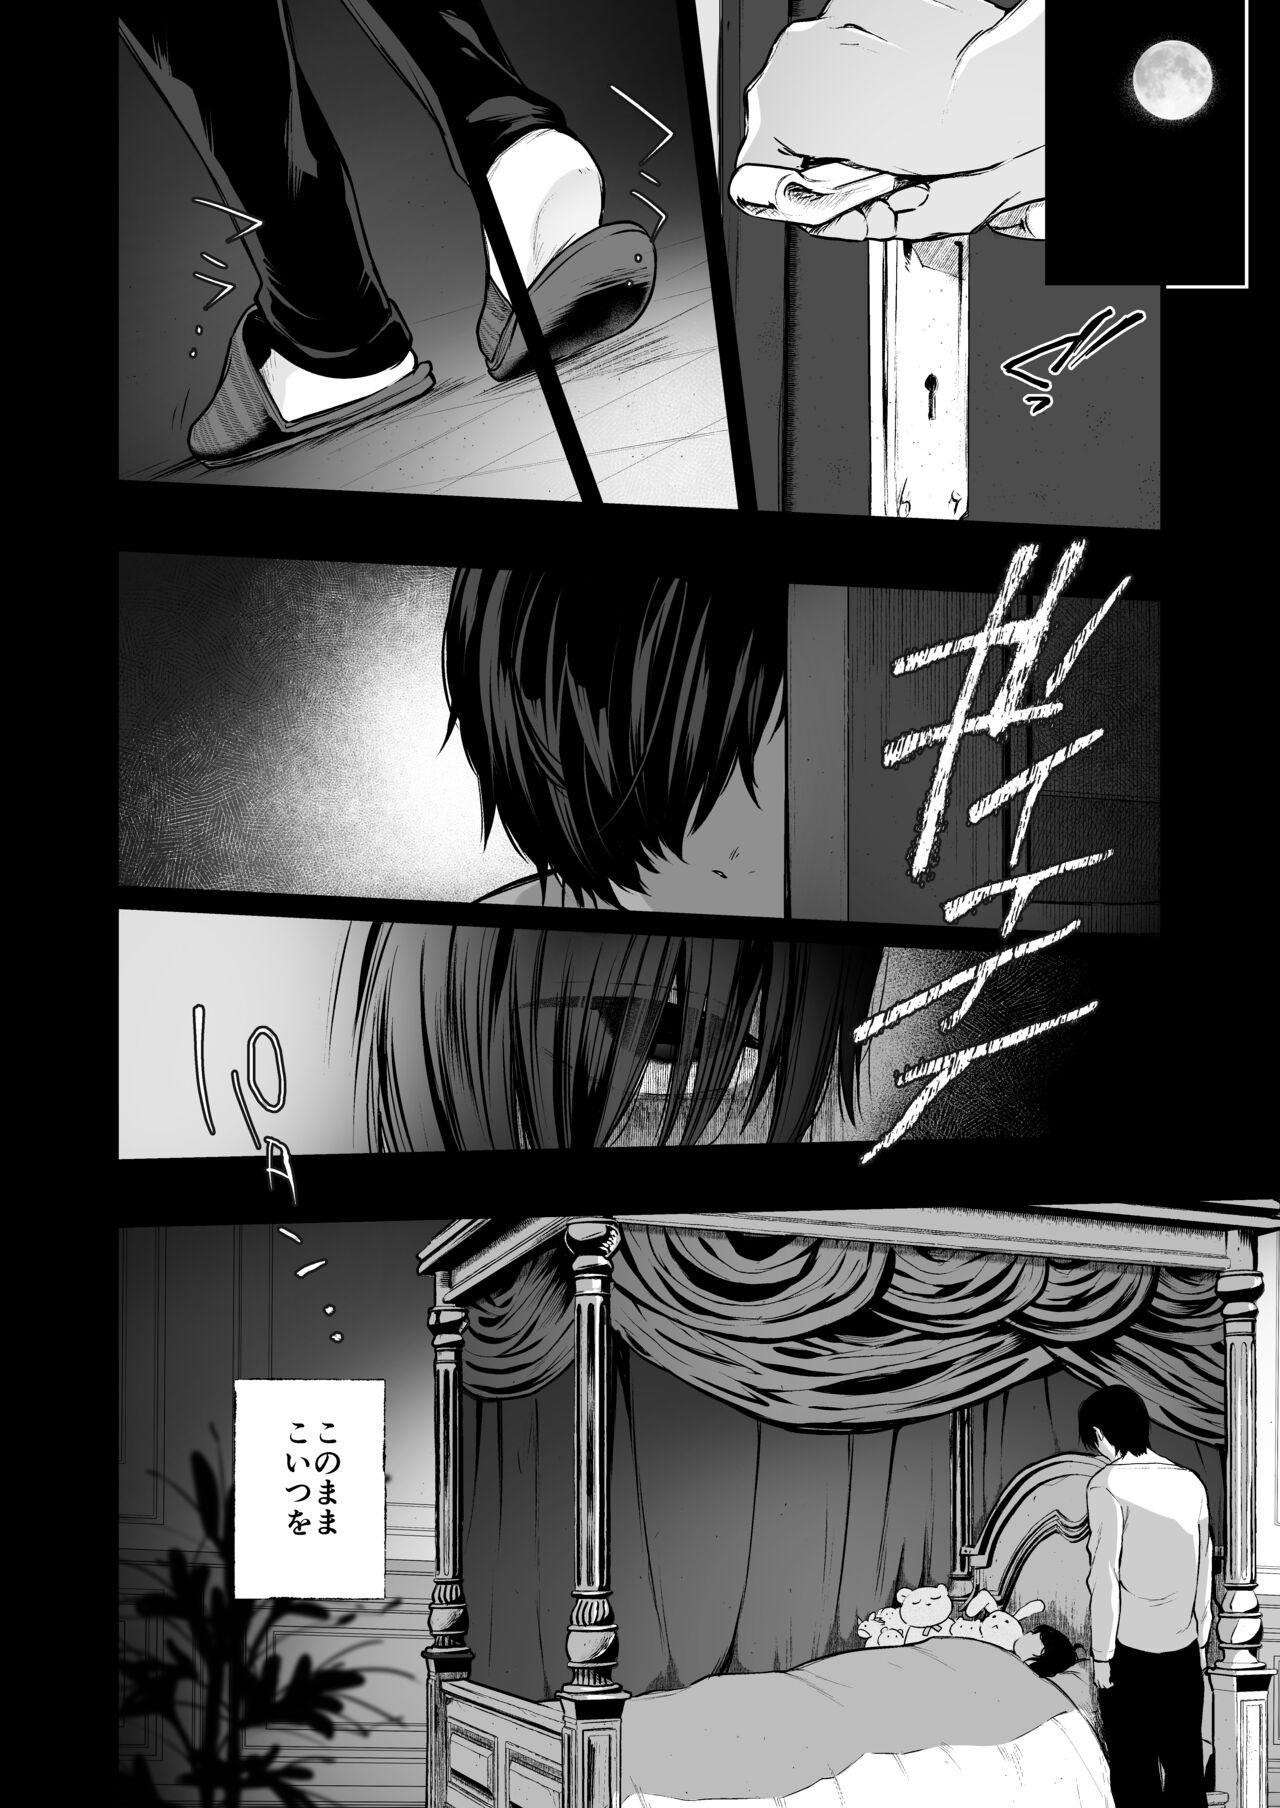 Spa Jorougumo no Hanazono 4 - Original Freak - Page 11